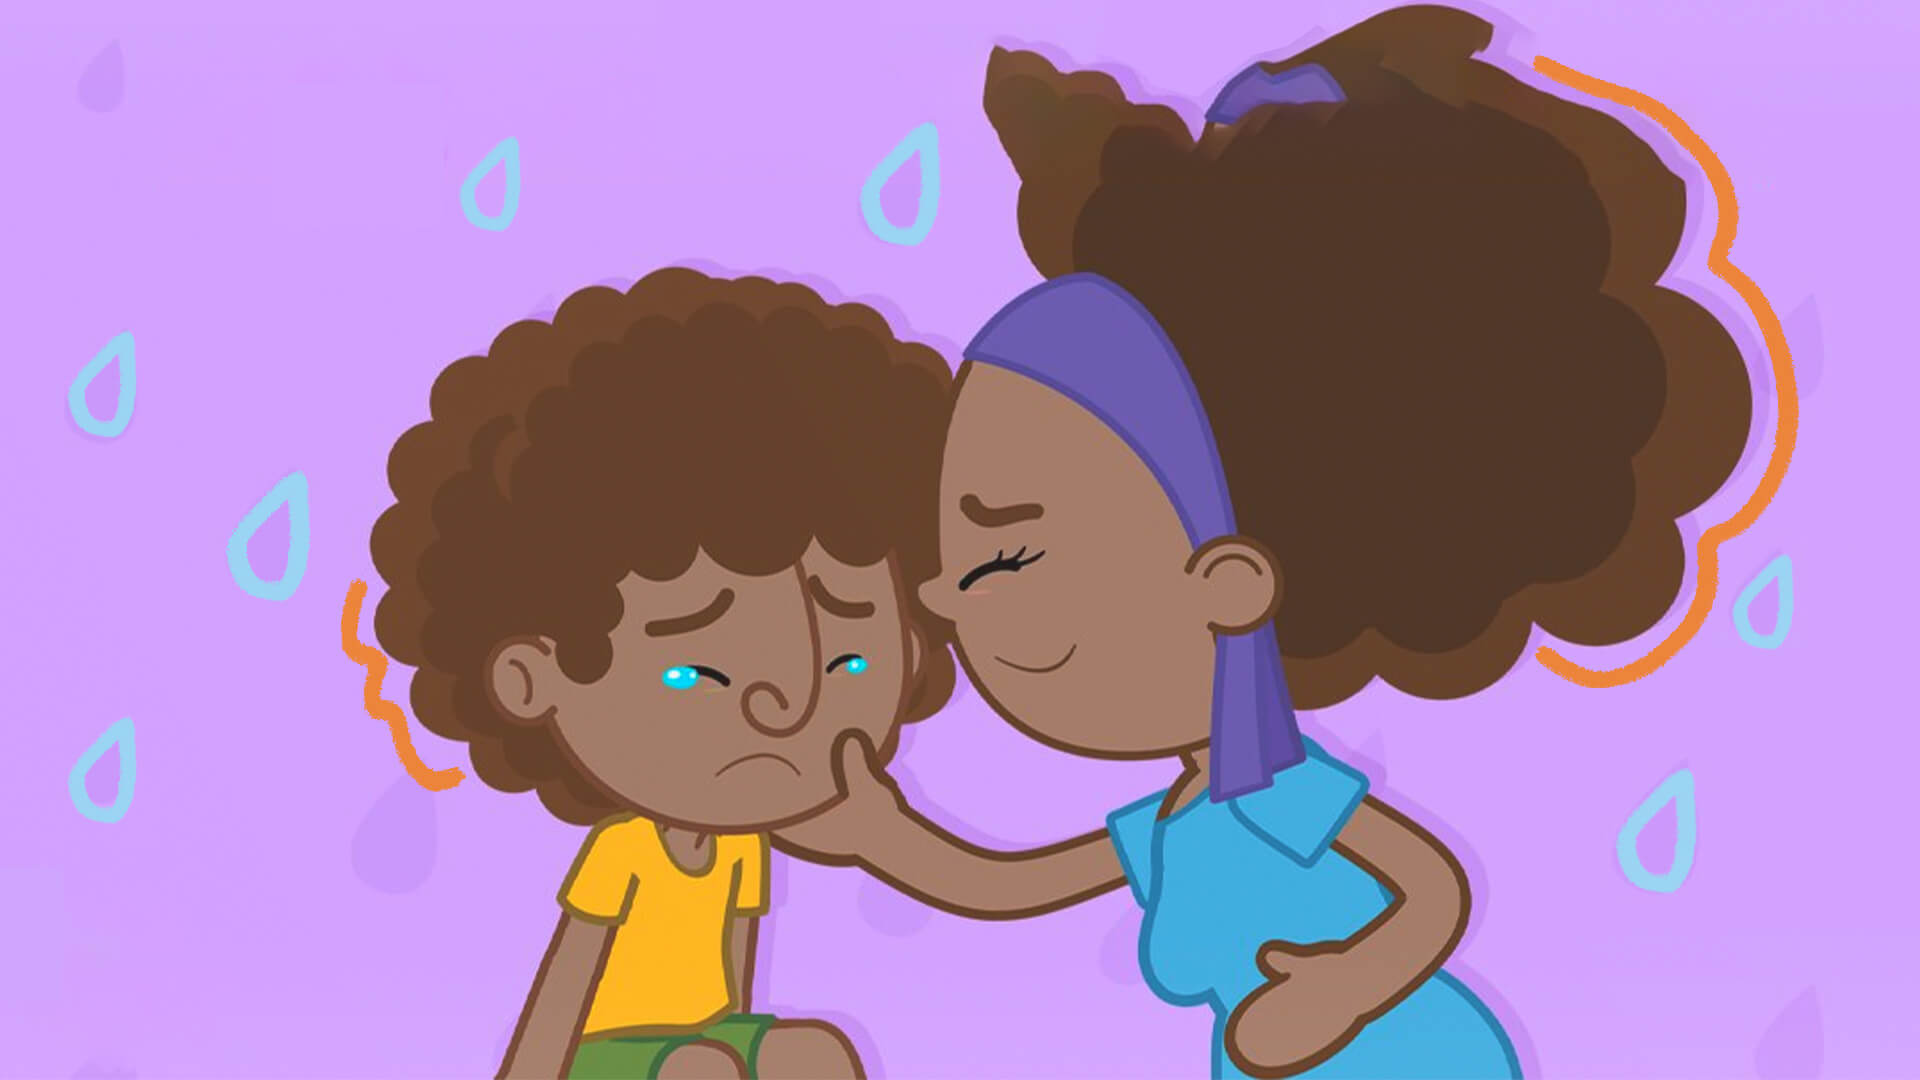 Captura de tela do vídeo "A tristeza vai passar", do Mundo Bita. O personagem Dan chora e sua mãe limpa suas lágrimas, com um sorriso.